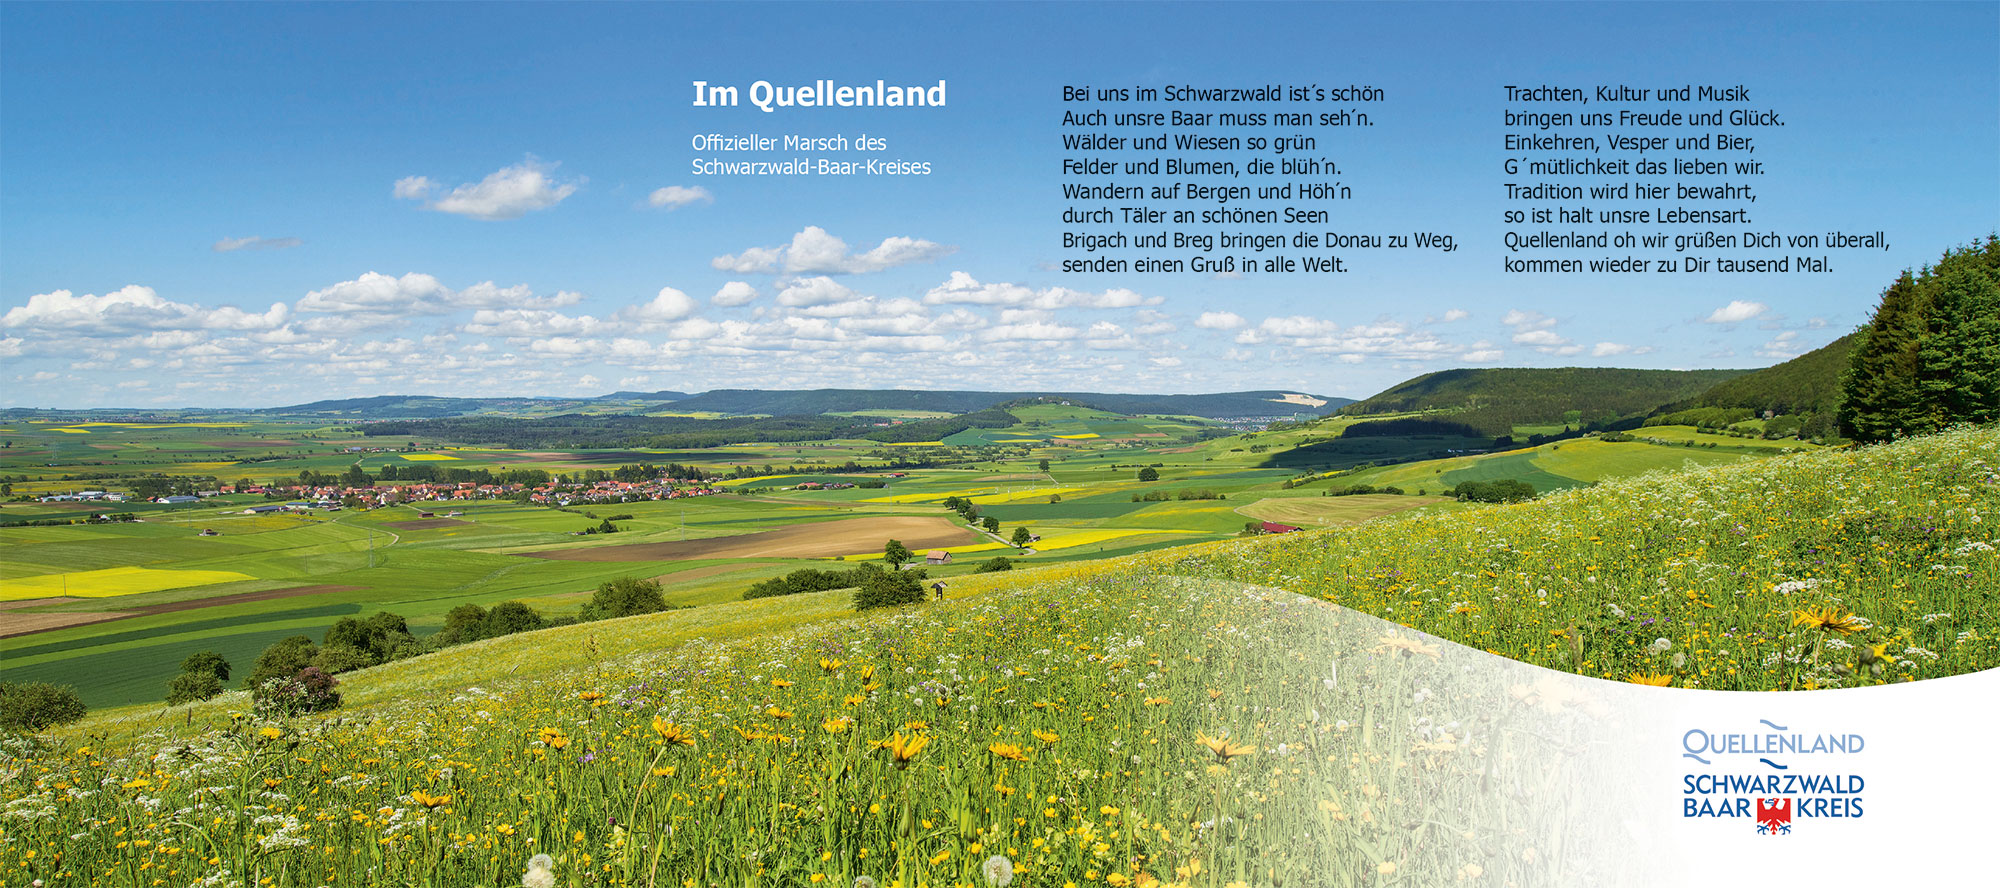 Coverbild "Im Quellenland - offizieller Marsch des Schwarzwald-Baar-Kreises". Zu sehen ist eine blühende Frühlingslandschaft auf der Baar. Grüne Wiesen voller Löwenzahnblühten, sowie Dörfer in der Ferne prägen die idyllische Landschaft.